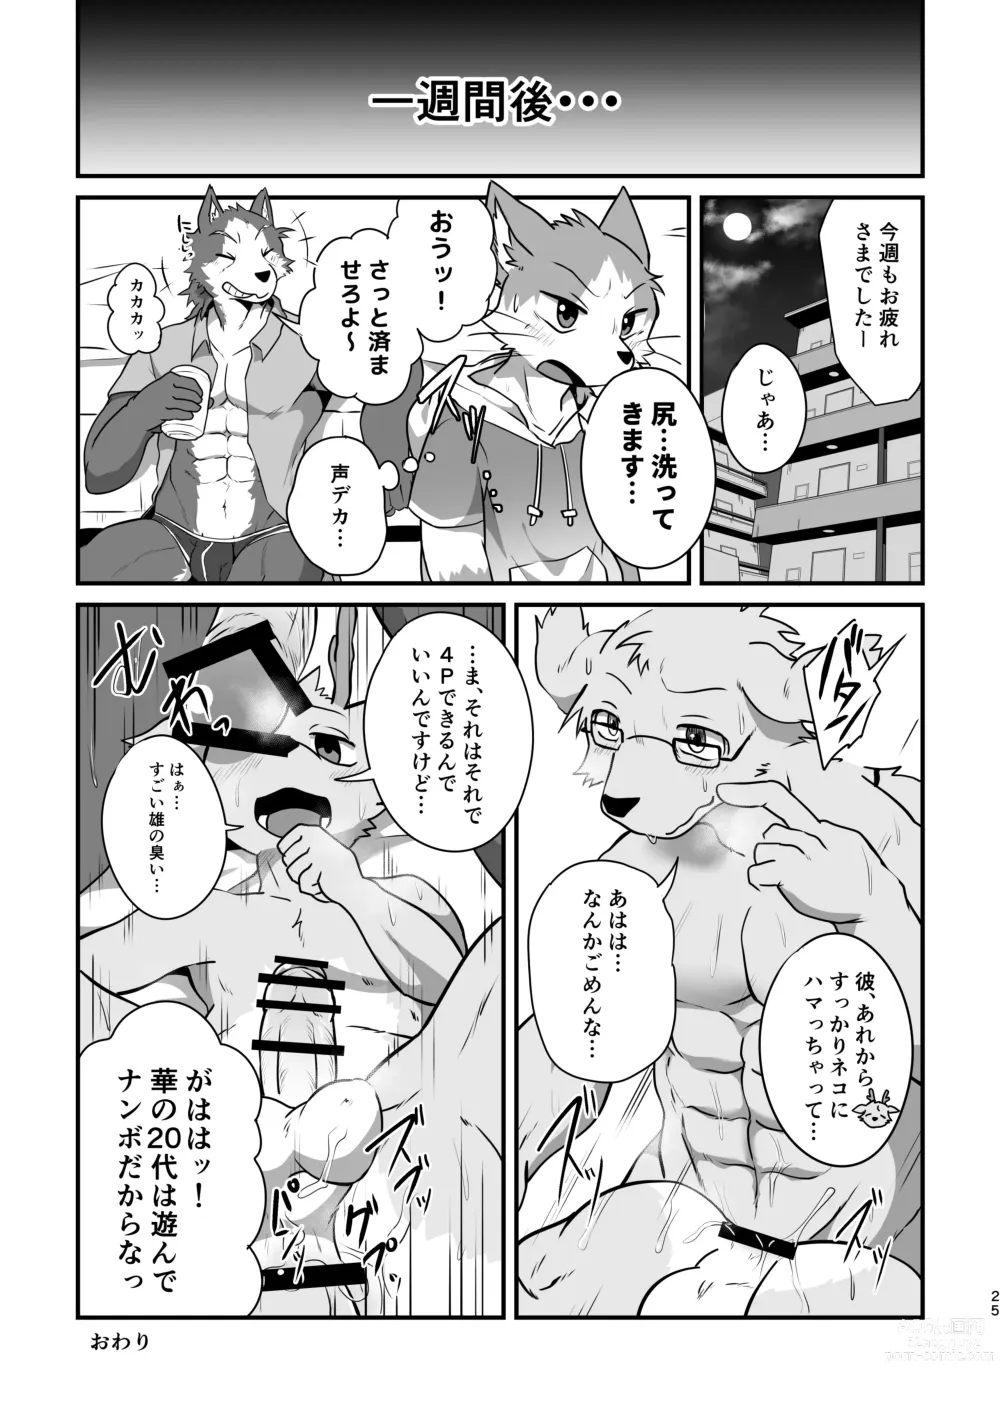 Page 24 of doujinshi Boku-Tachi Futari wa Neko shitai!